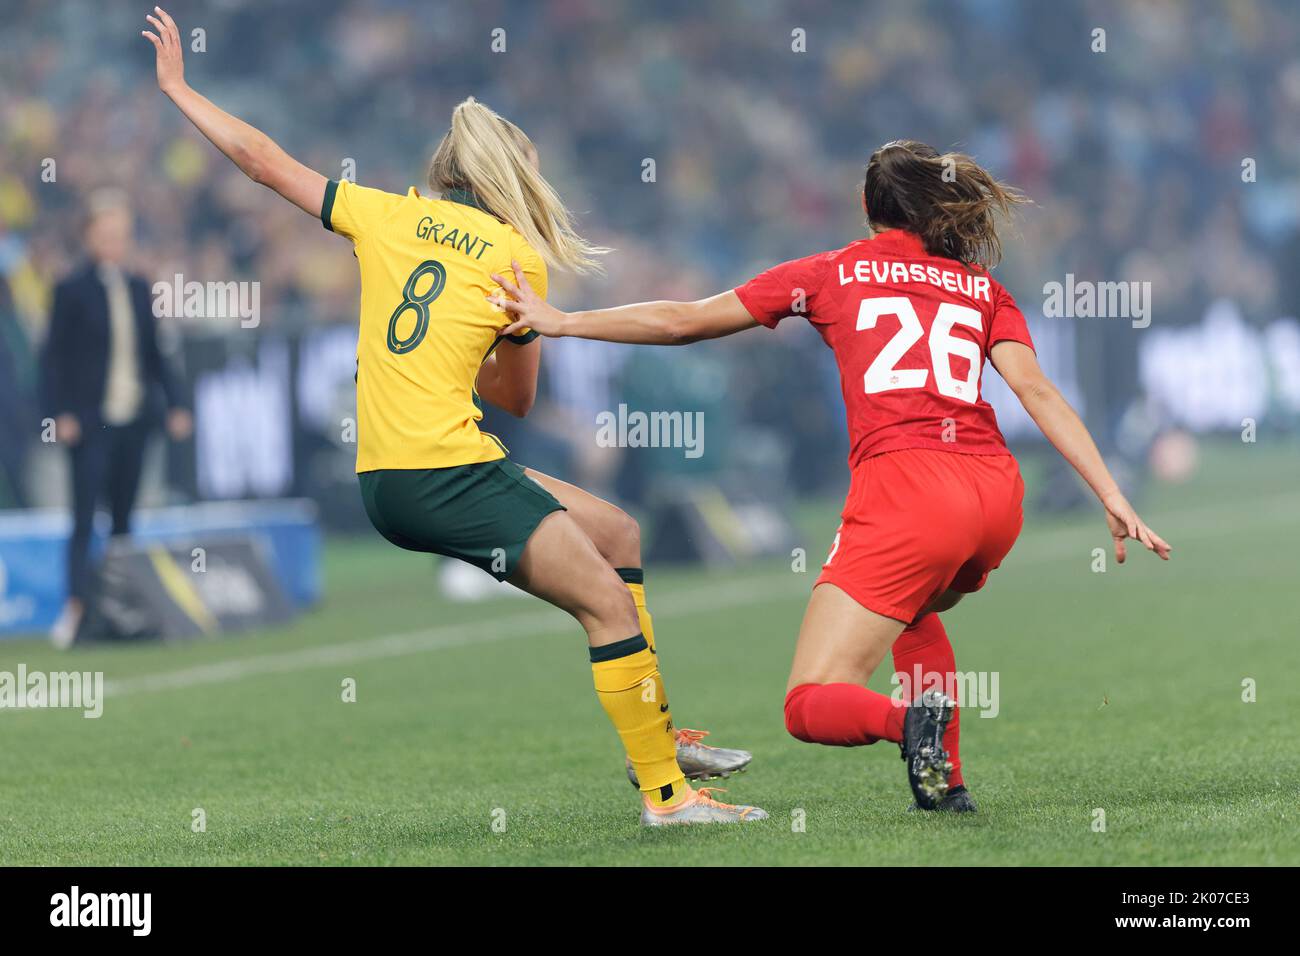 SYDNEY, AUSTRALIA - SETTEMBRE 6: Charlotte Grant of Australia compete per la palla con Marie Levasseur del Canada durante l'International friendly M Foto Stock